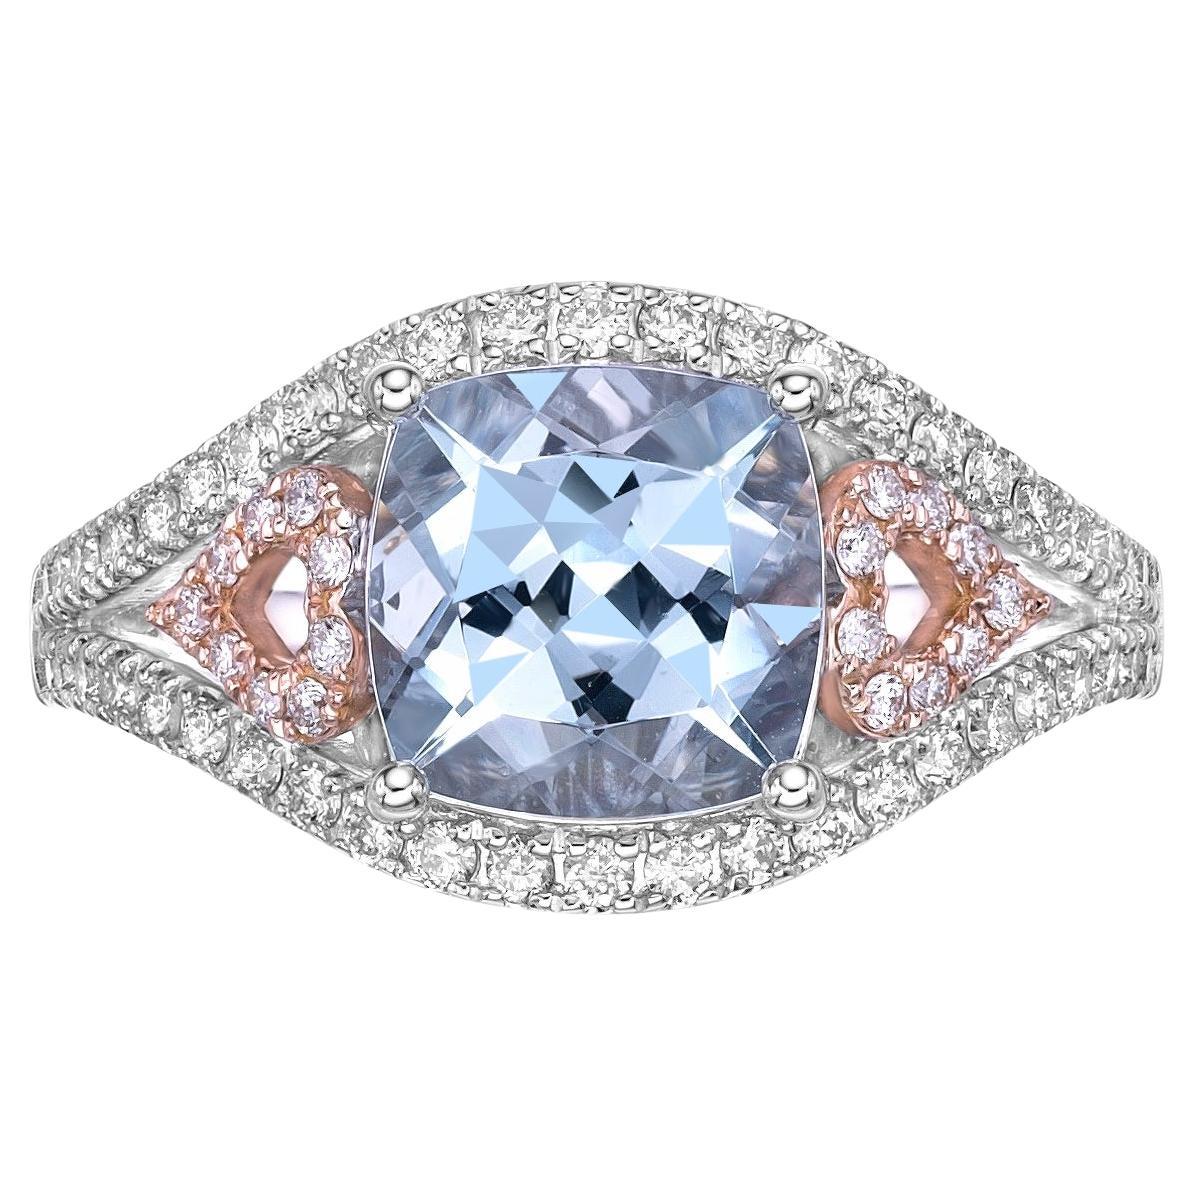 2.12 Carat Aquamarine Fancy Ring in 18Karat White Rose Gold with Diamond.  